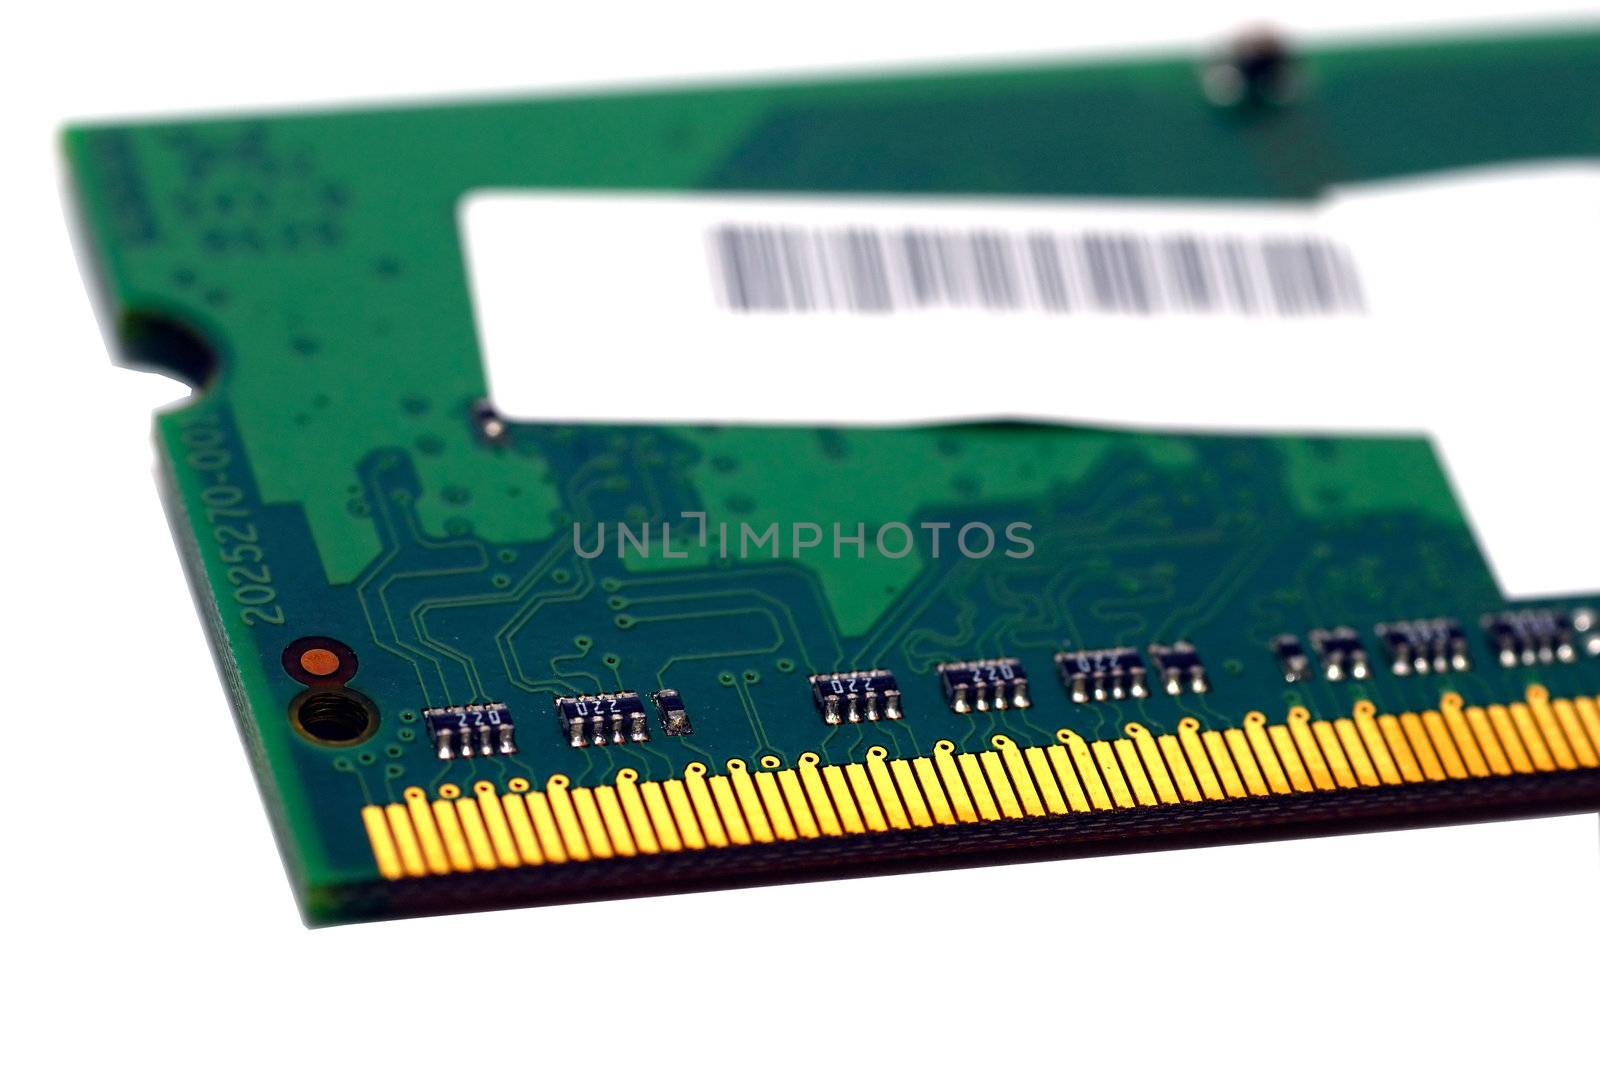  Macro shot of a computer RAM memory